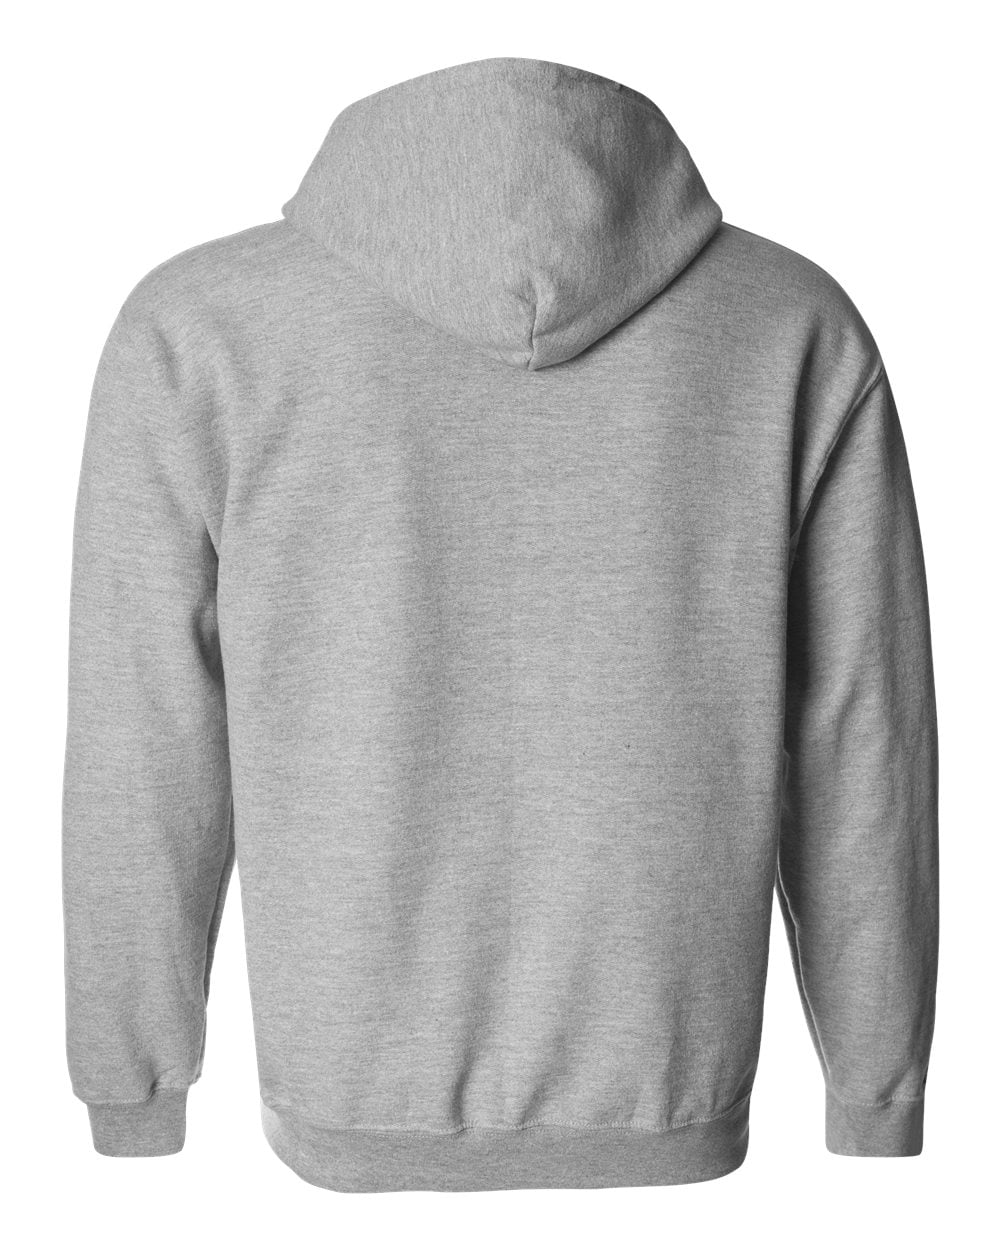 Gildan Mens Fleece Zip Hooded Sweatshirt 